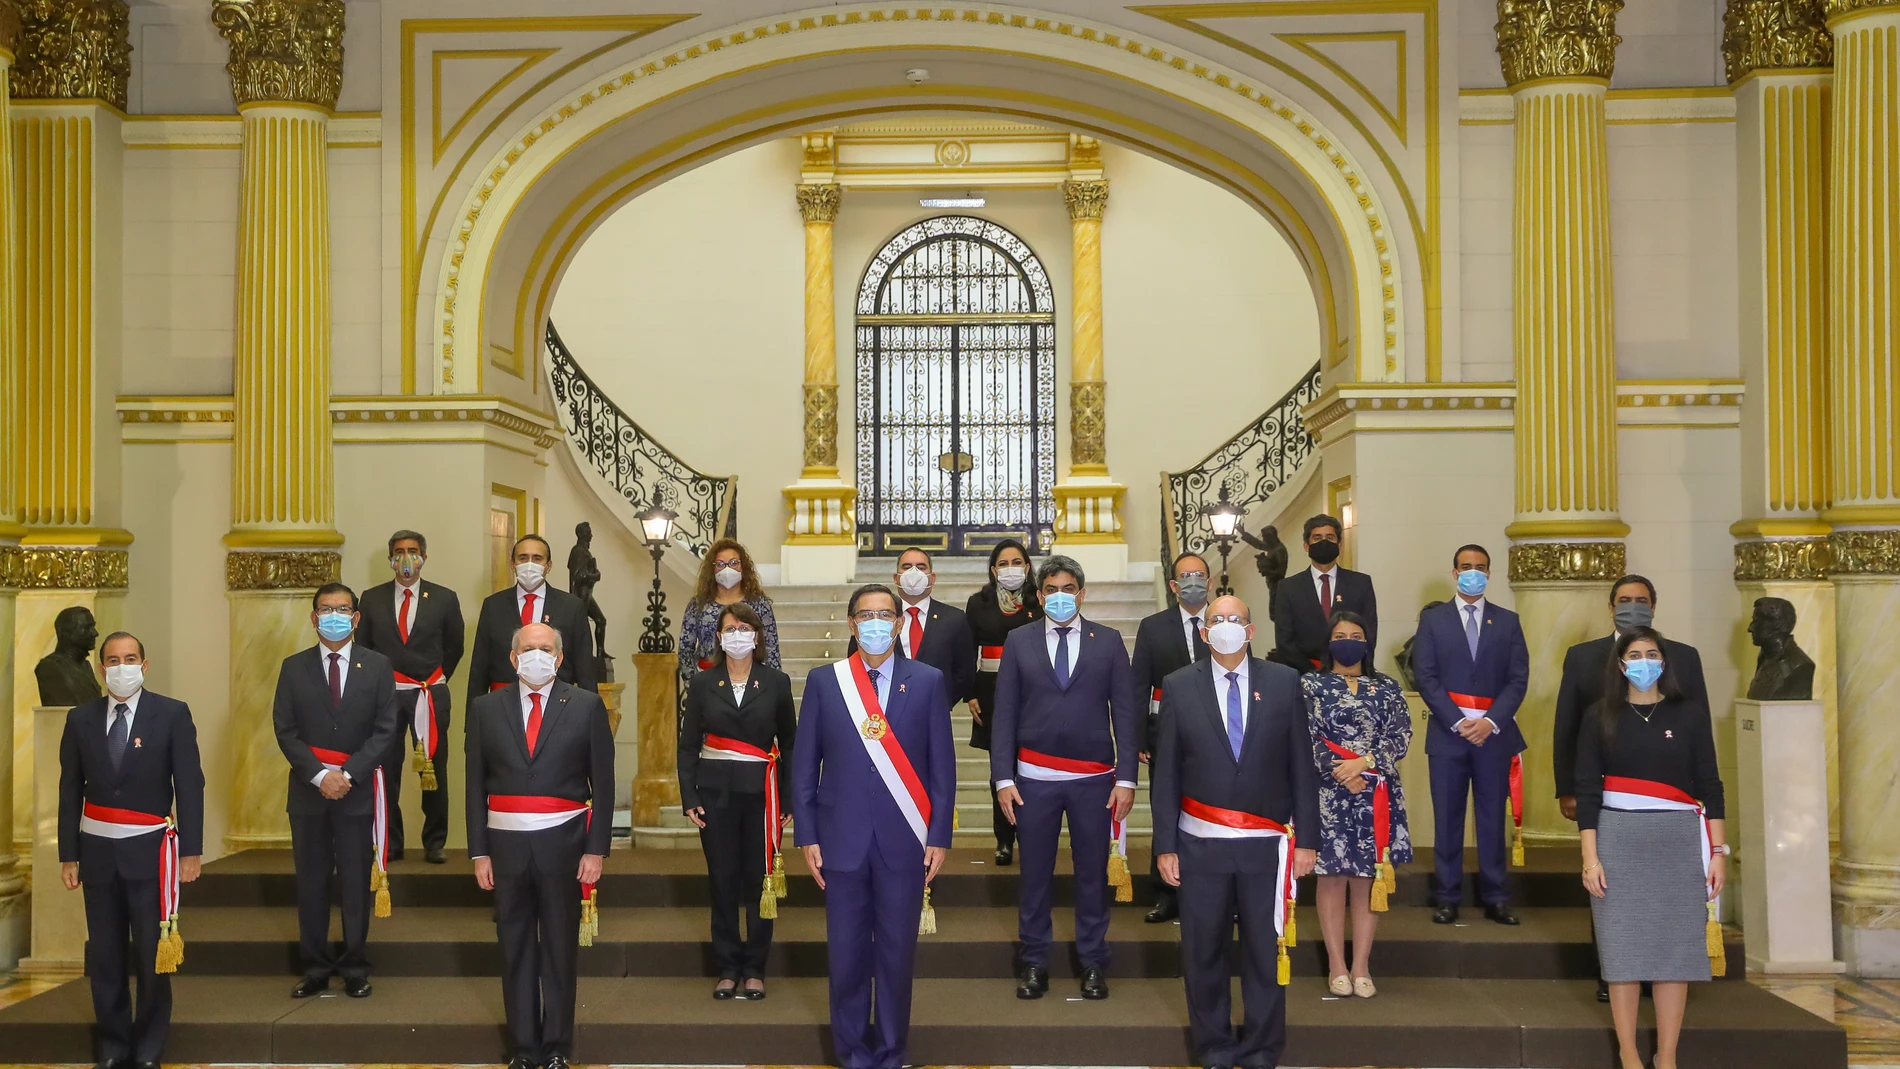 Cabinet reshuffle in Peru